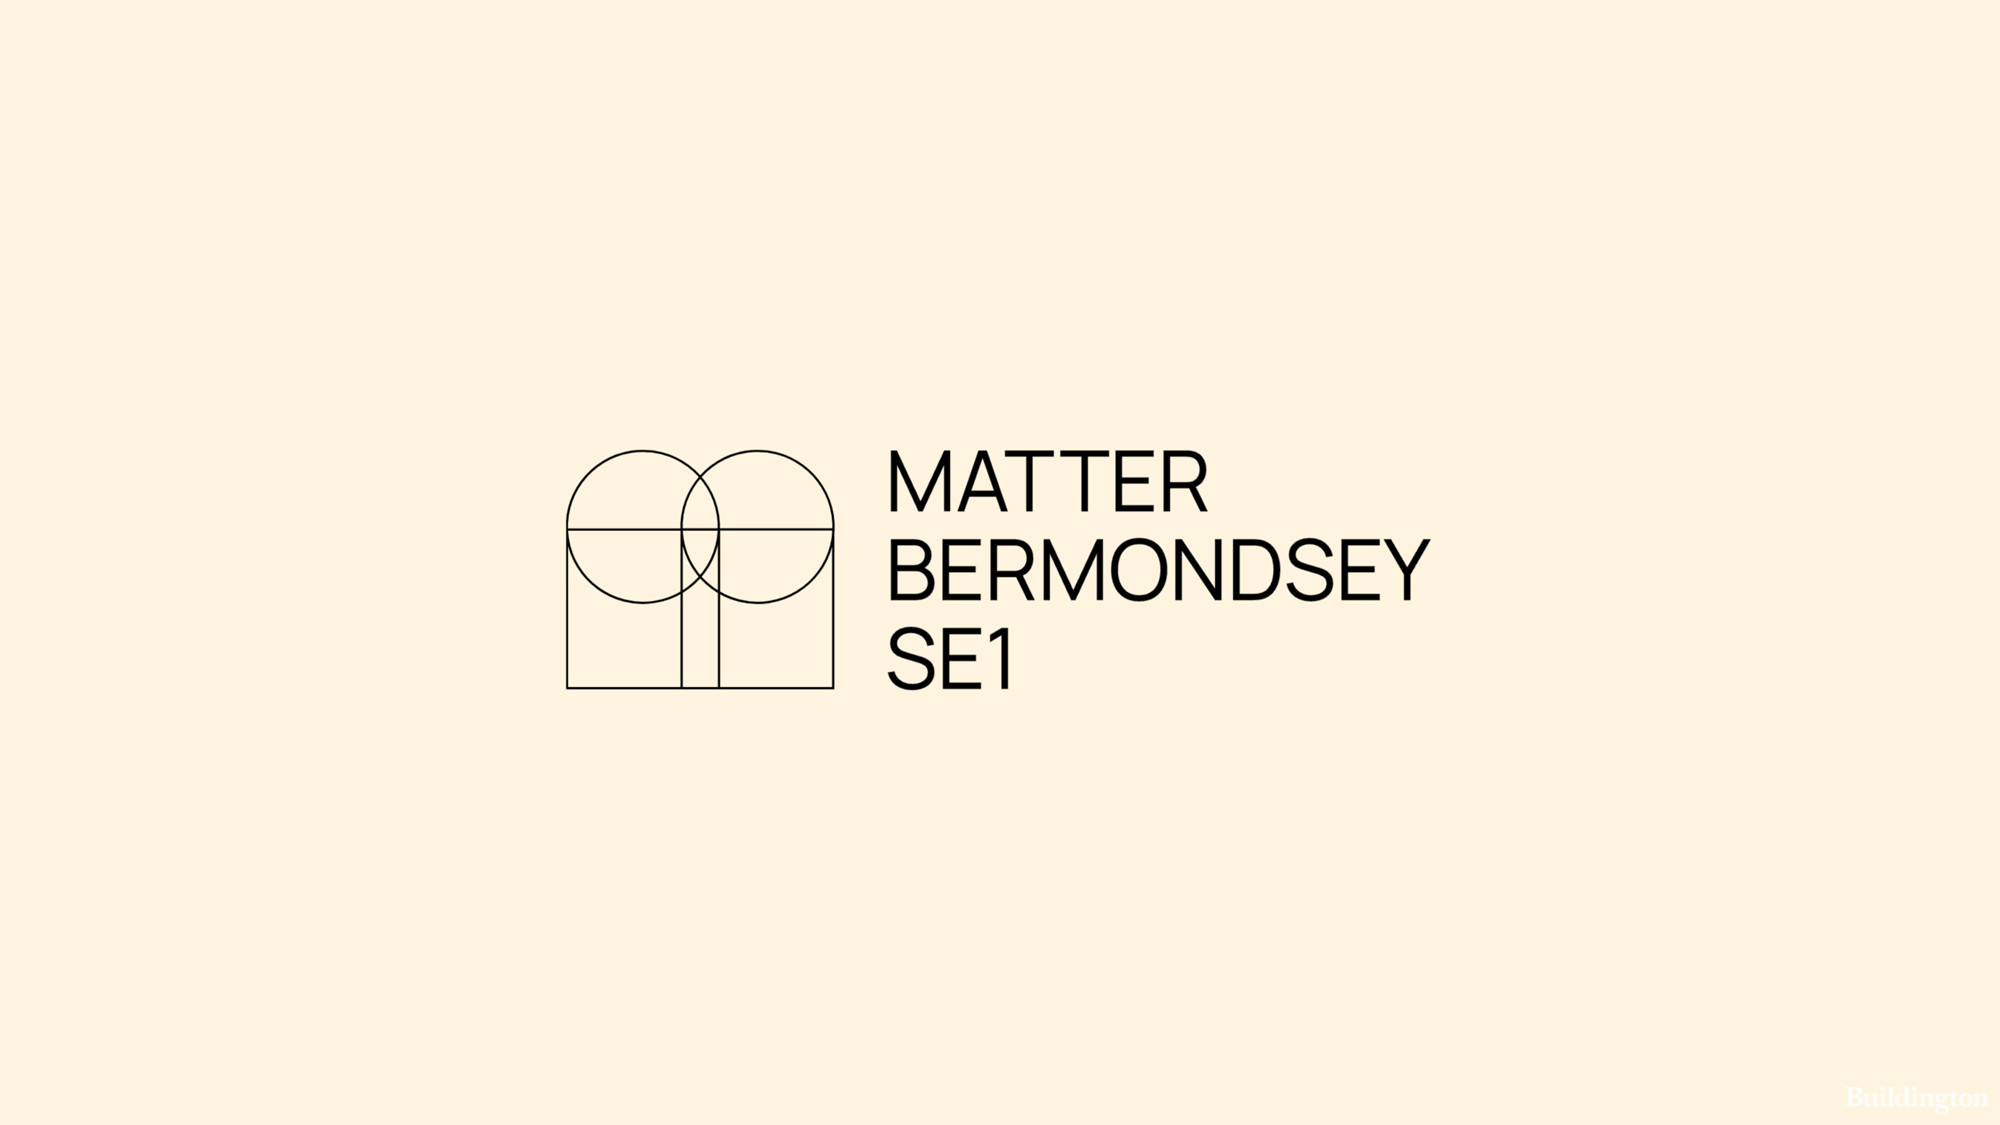 Matter Bermondsey office element logo